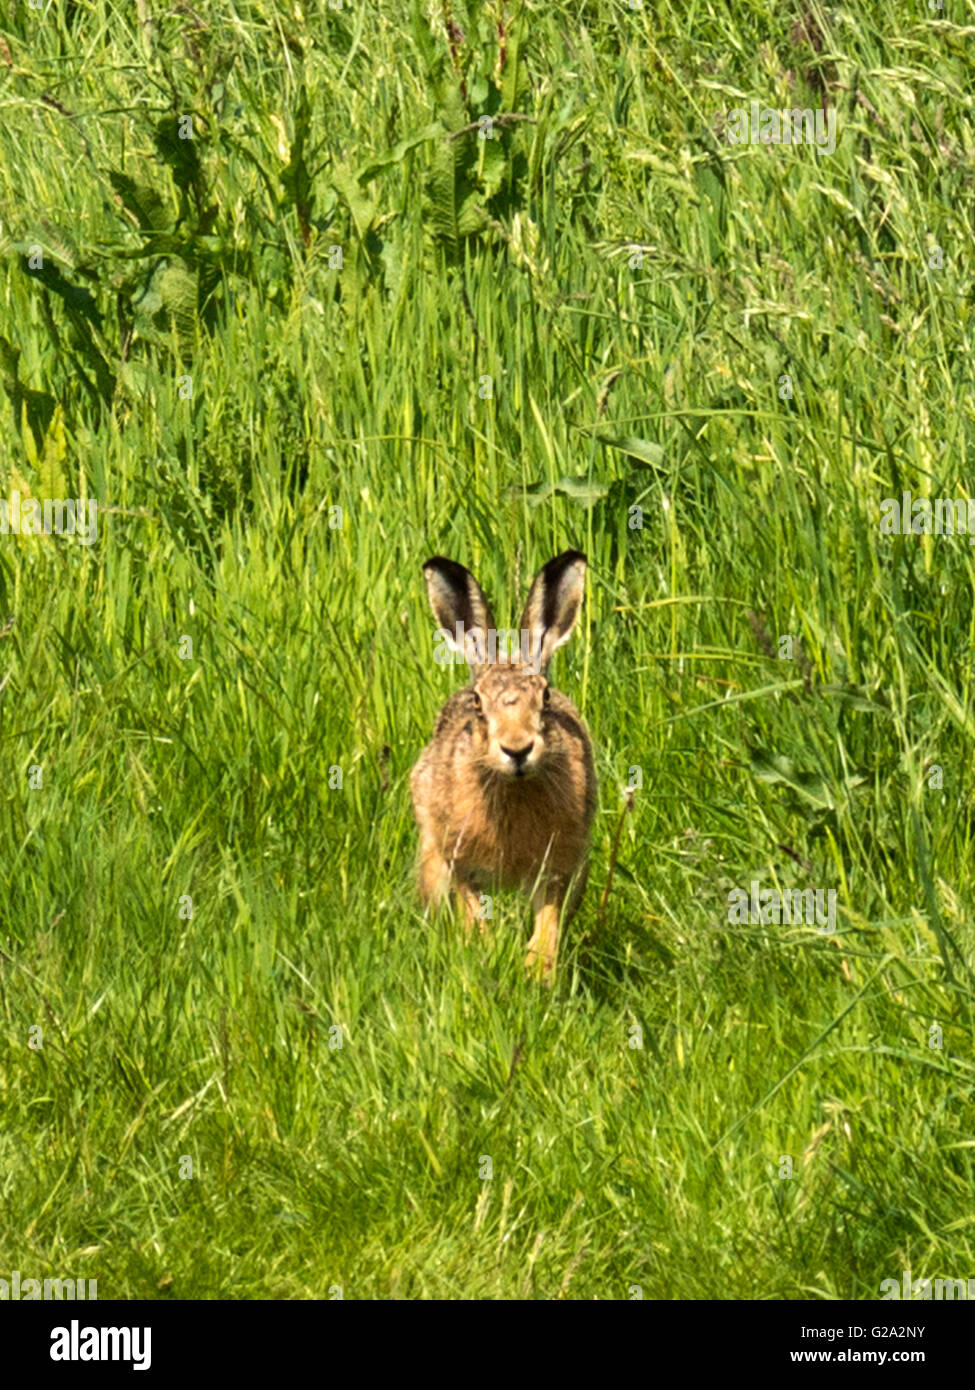 Magnifico marrone selvatico lepre (Lepus europaeus) misurazione illustrato nei suoi dintorni, isolata contro erba verde dello sfondo. Foto Stock